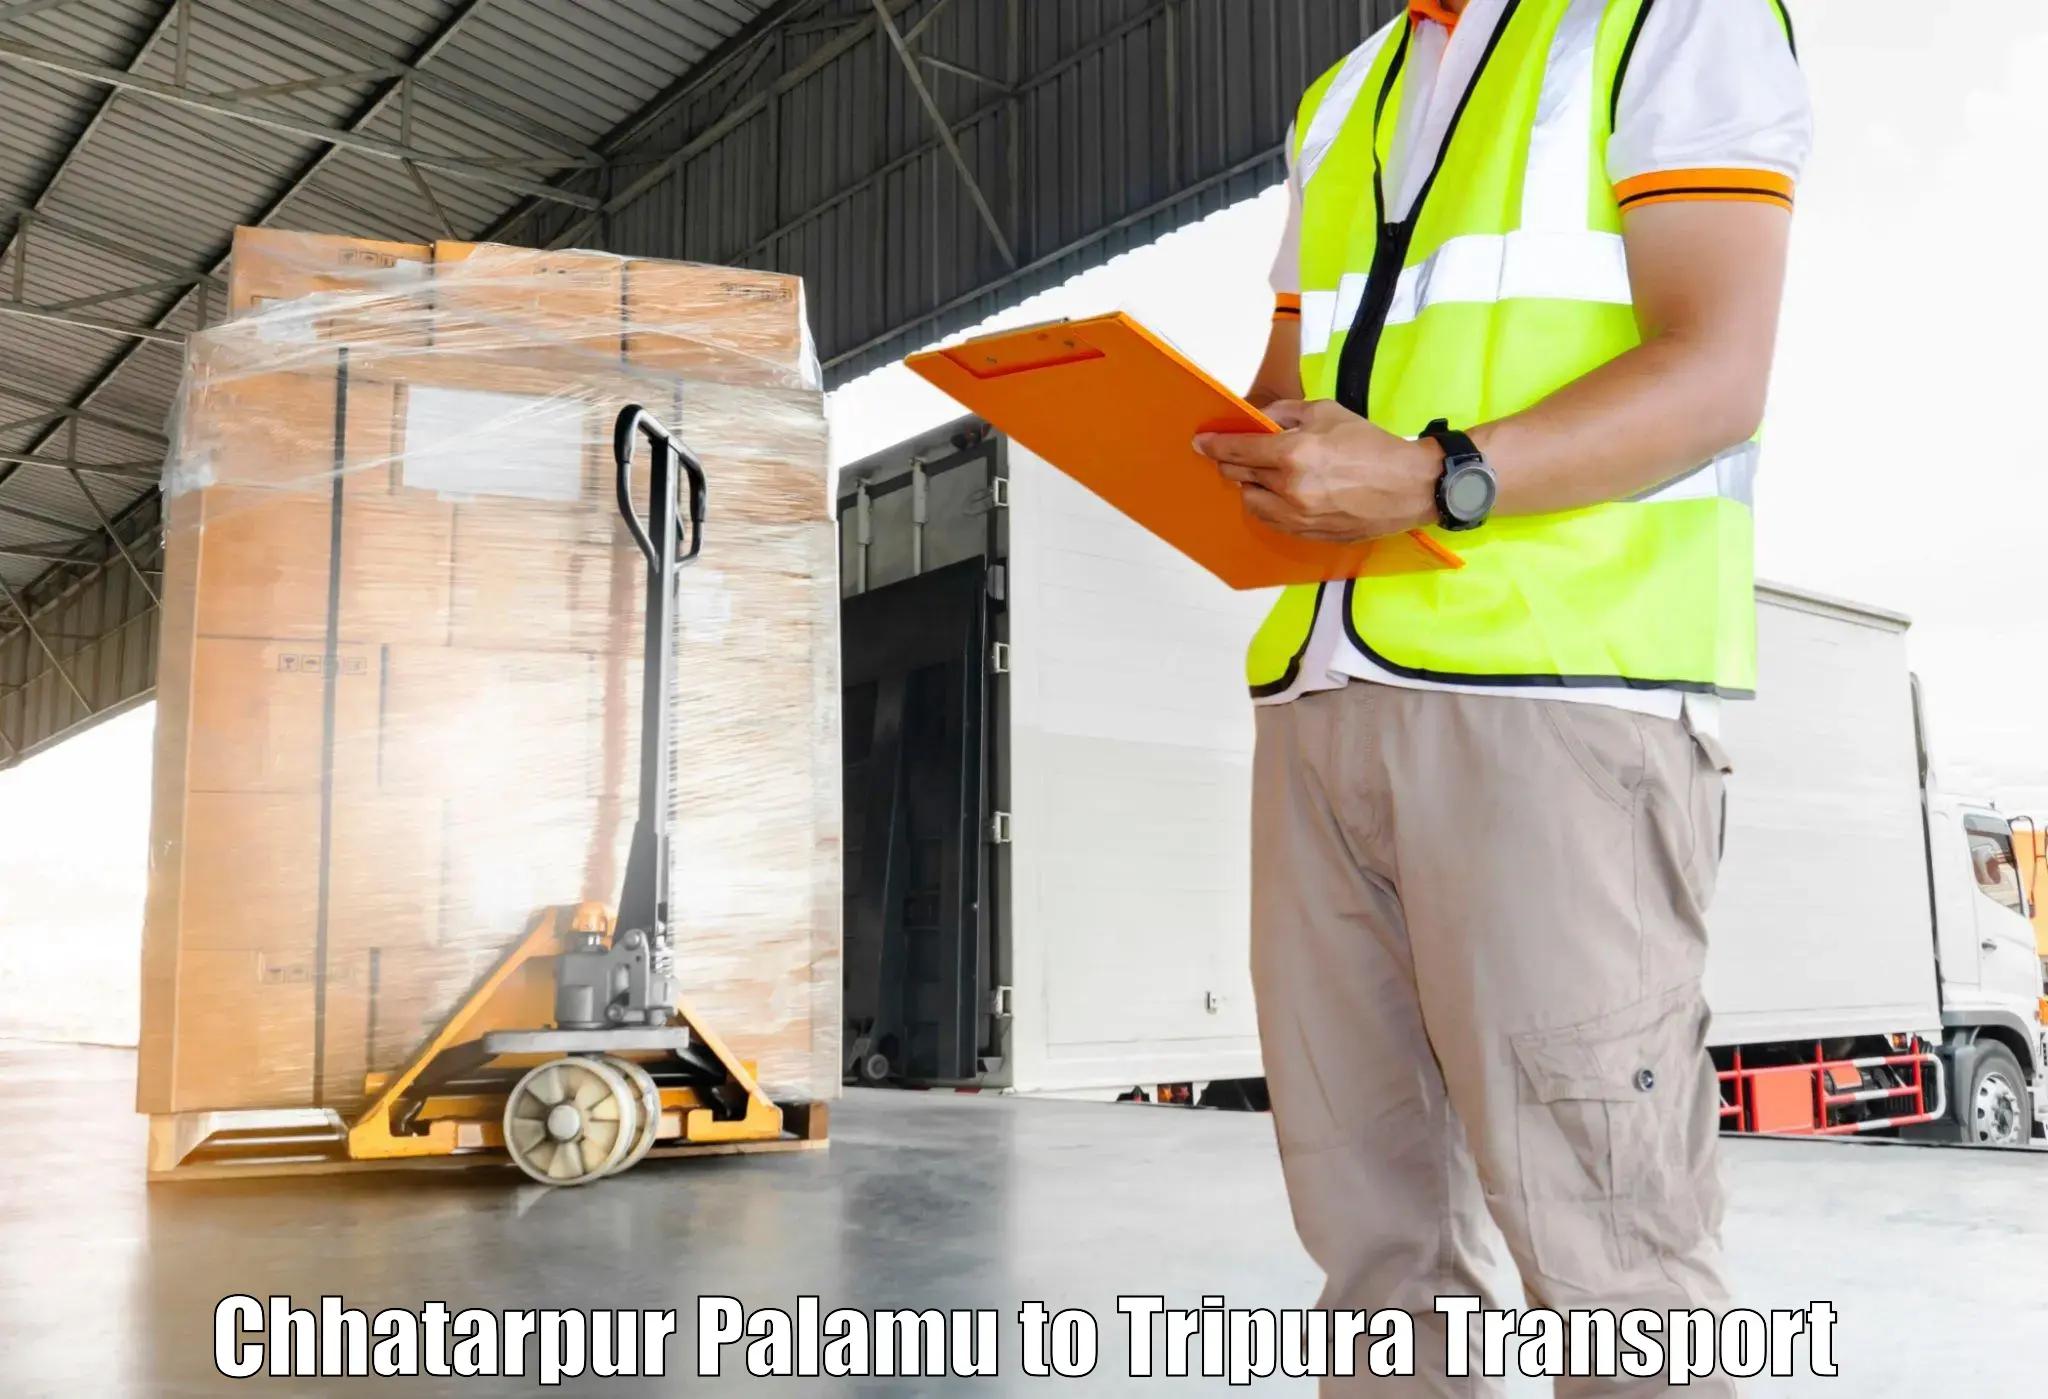 Nearest transport service Chhatarpur Palamu to Kailashahar